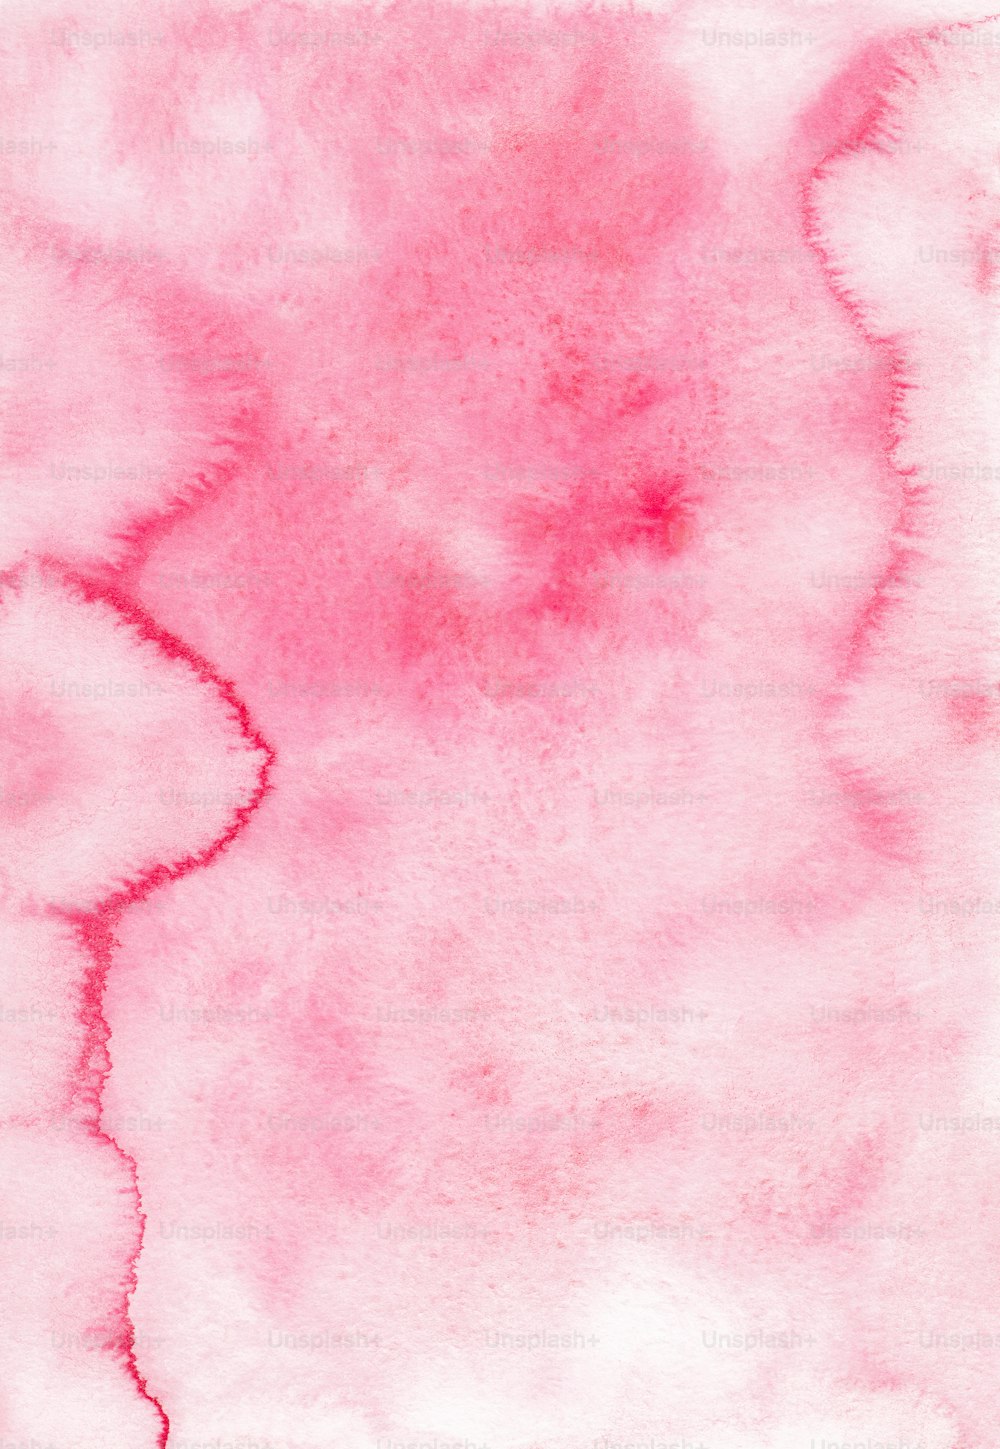 une aquarelle sur fond rose et blanc